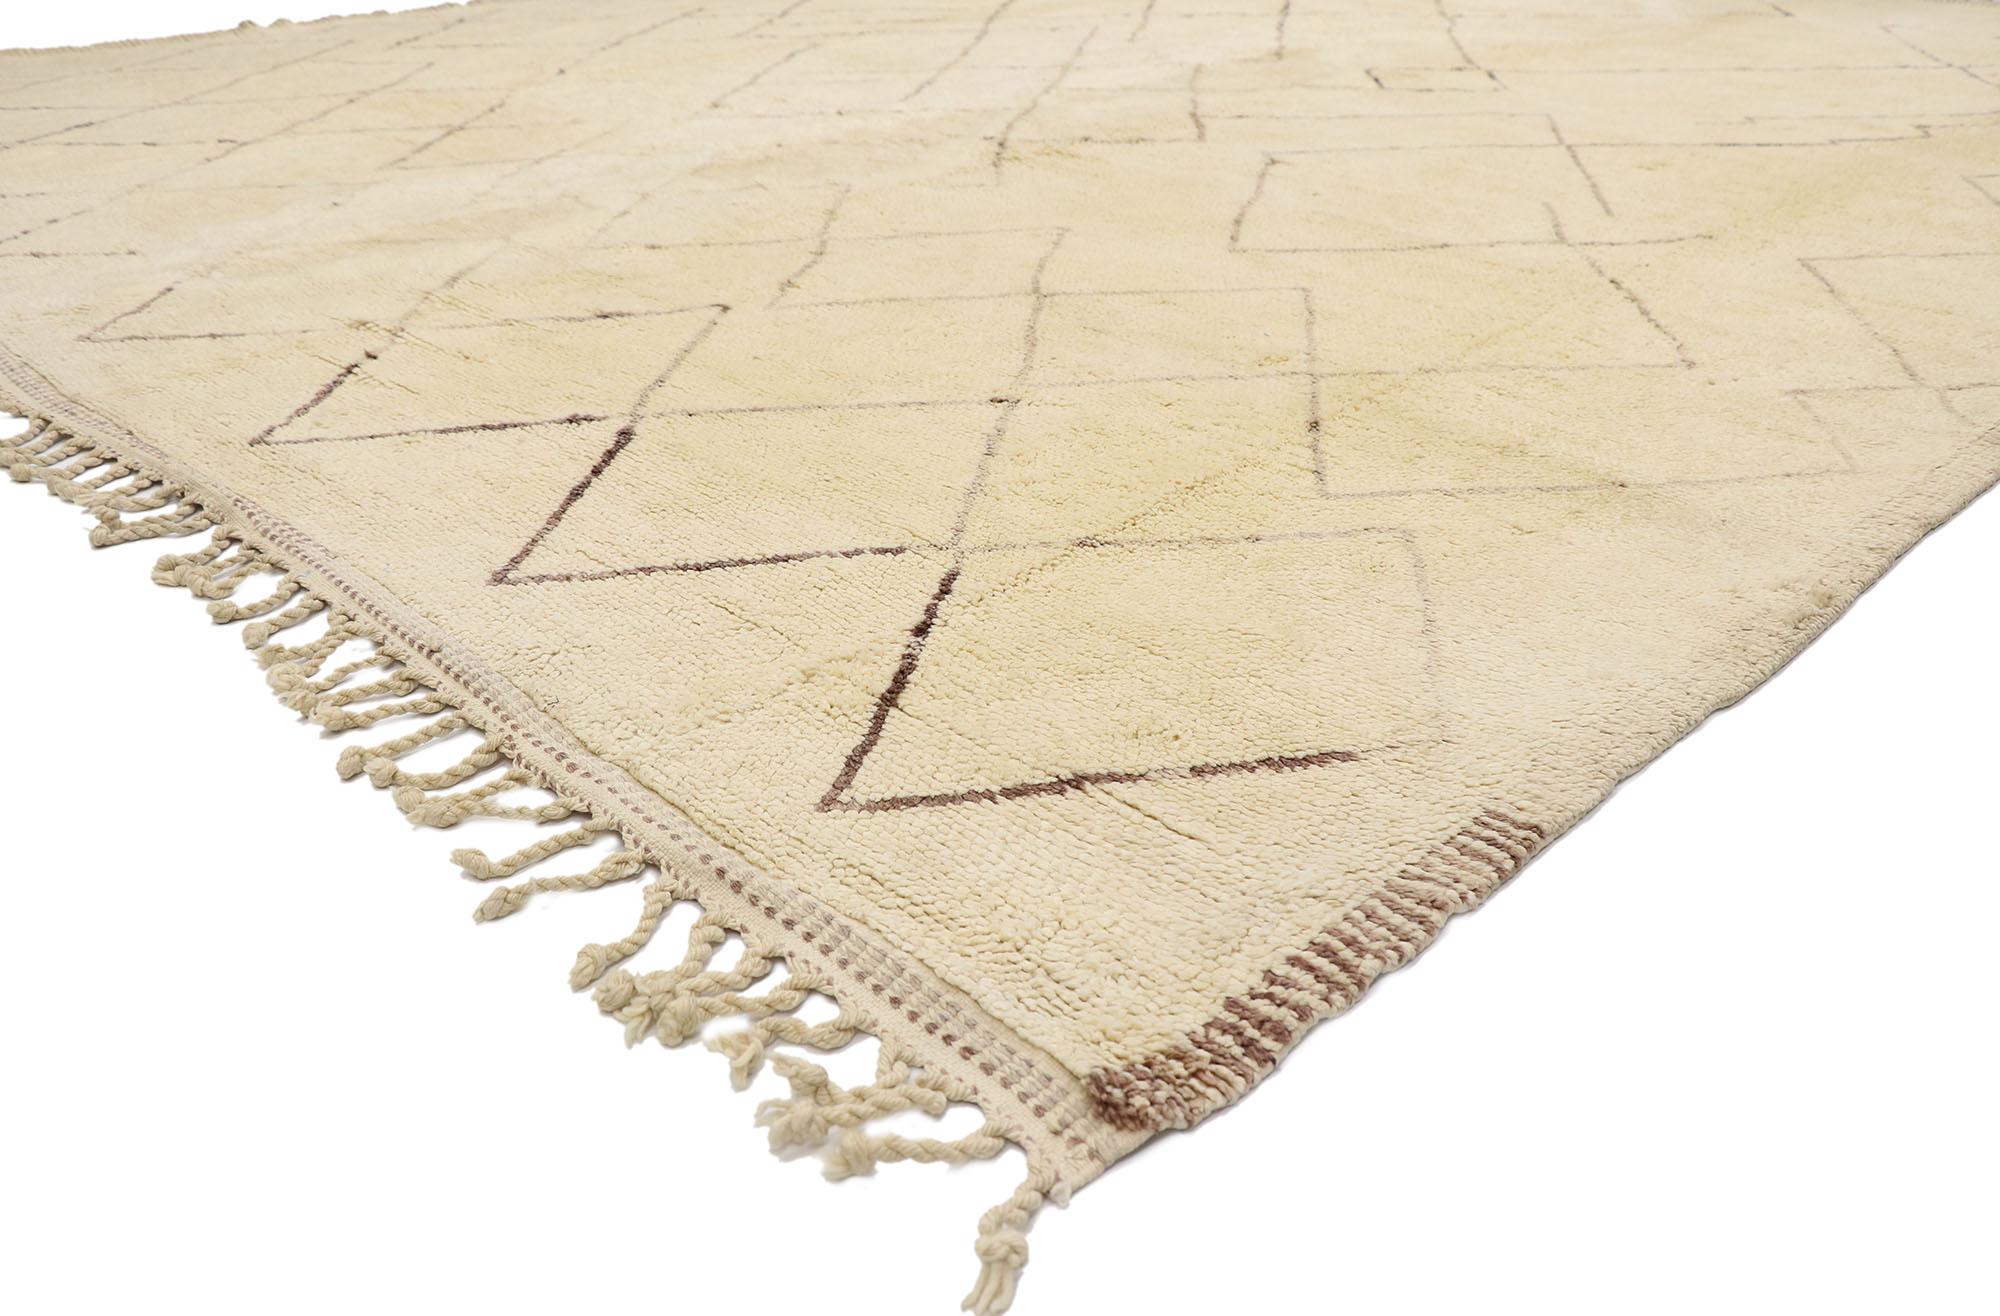 21148 Großer neutraler marokkanischer Berberteppich 11'05 x 14'06.
Minimalistisches Shibui trifft auf Wabi-Sabi in diesem handgeknüpften marokkanischen Berberteppich aus Wolle. Das perfekt unvollkommene Gitter und die erdigen, neutralen Farben, die